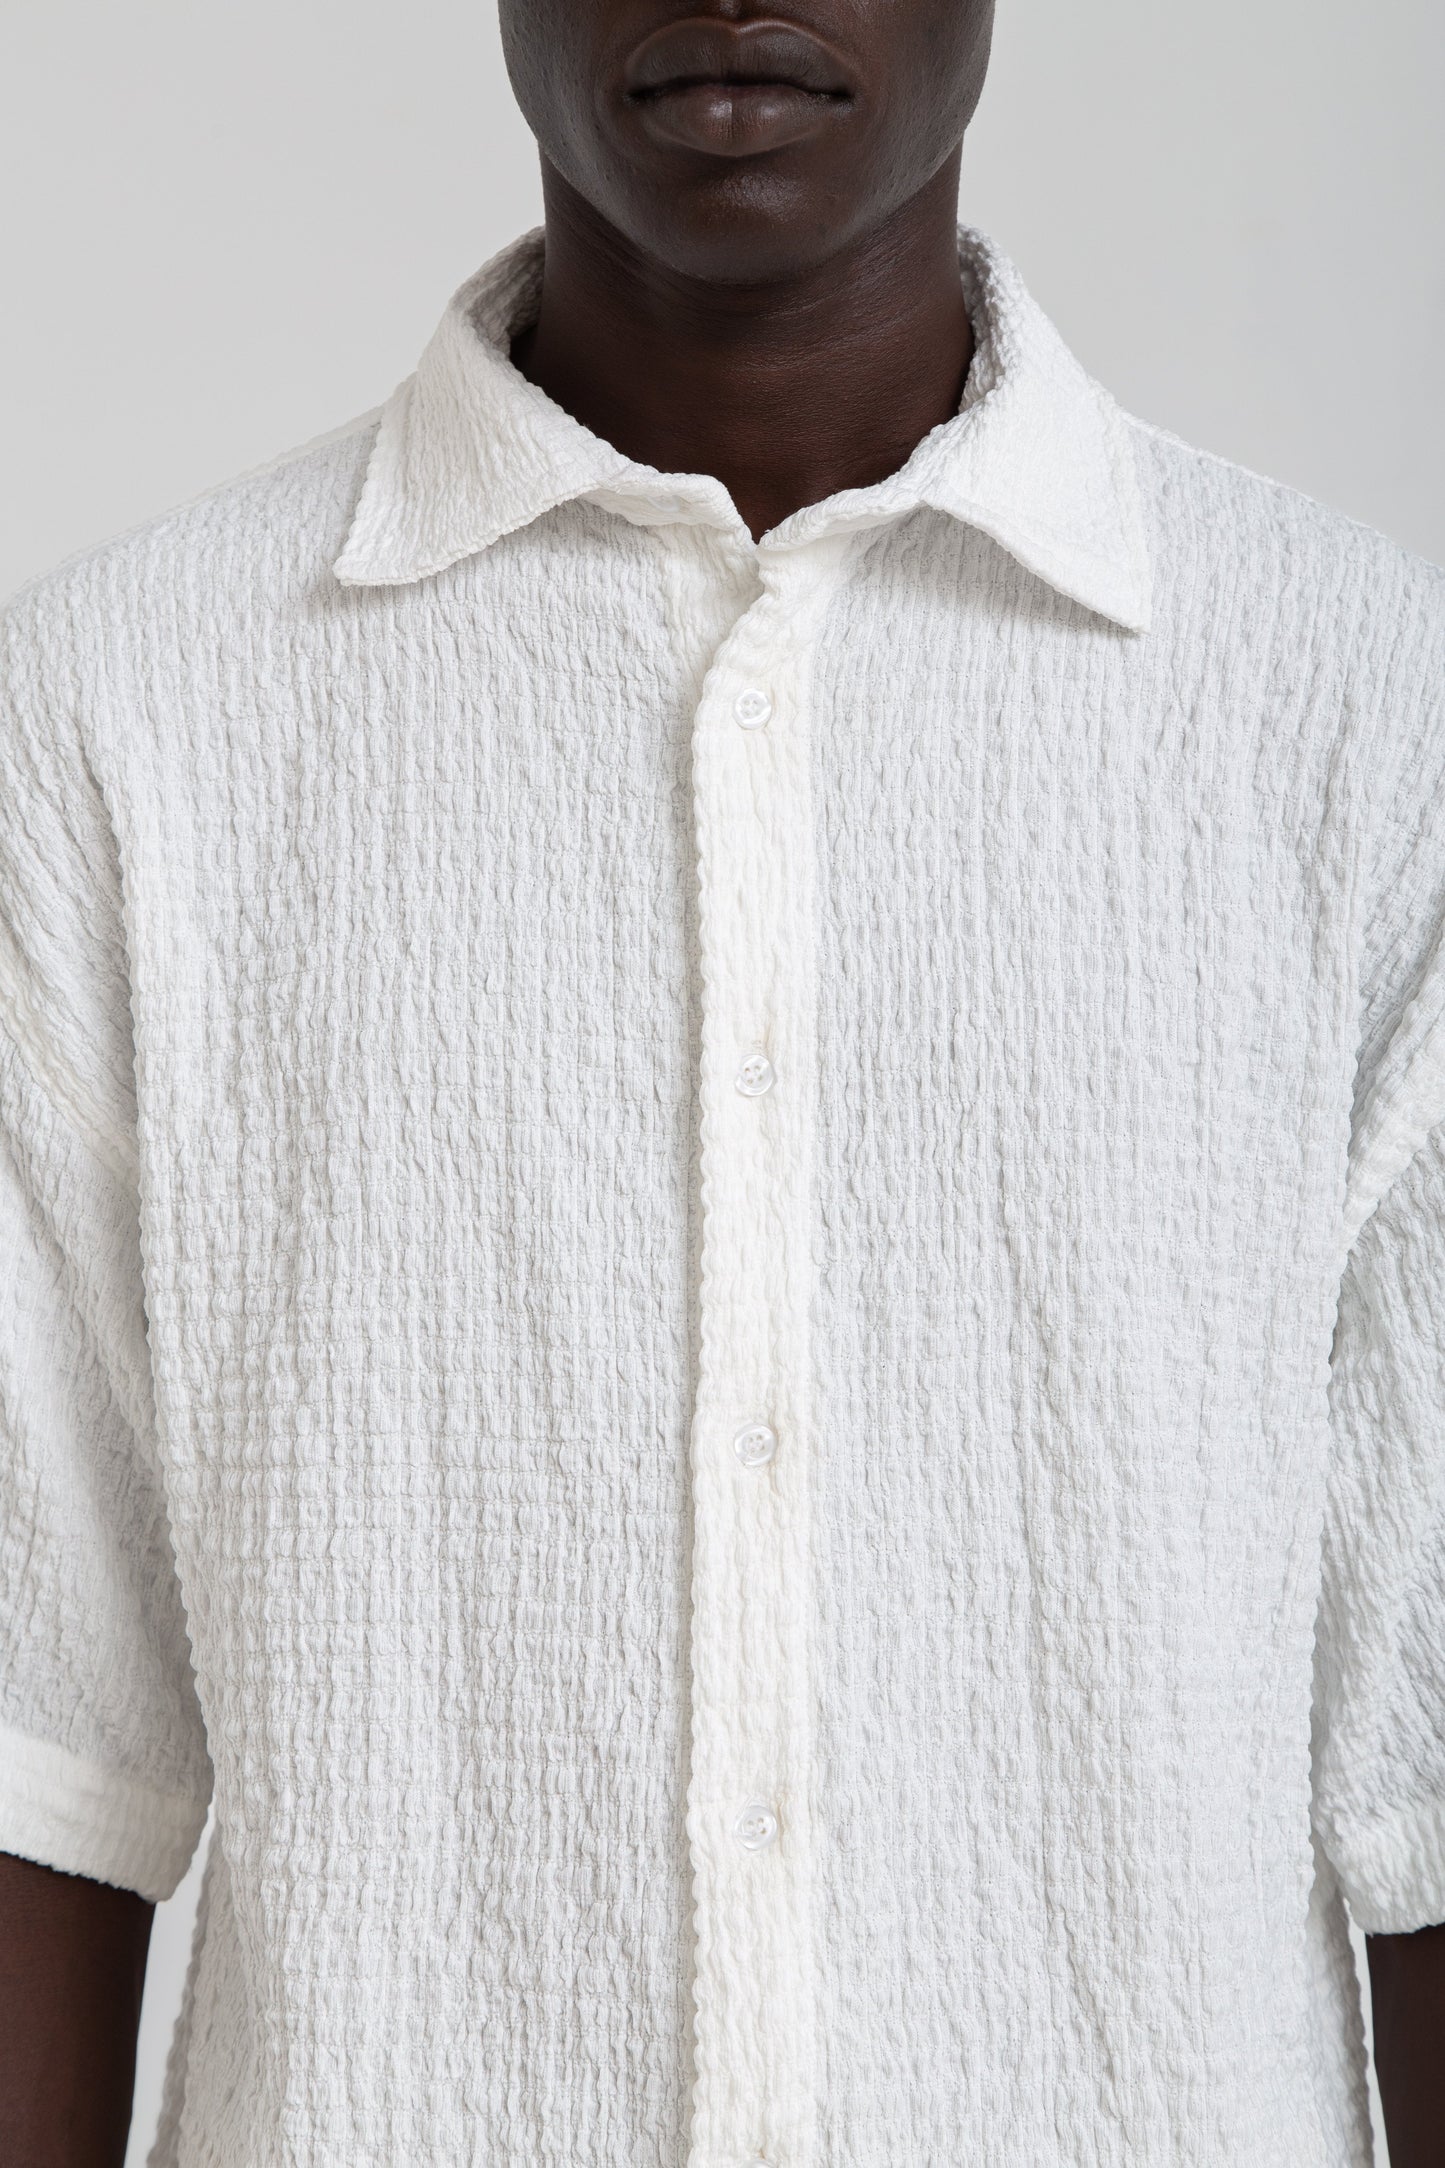 White Wrinkles Shirt - oddegypt